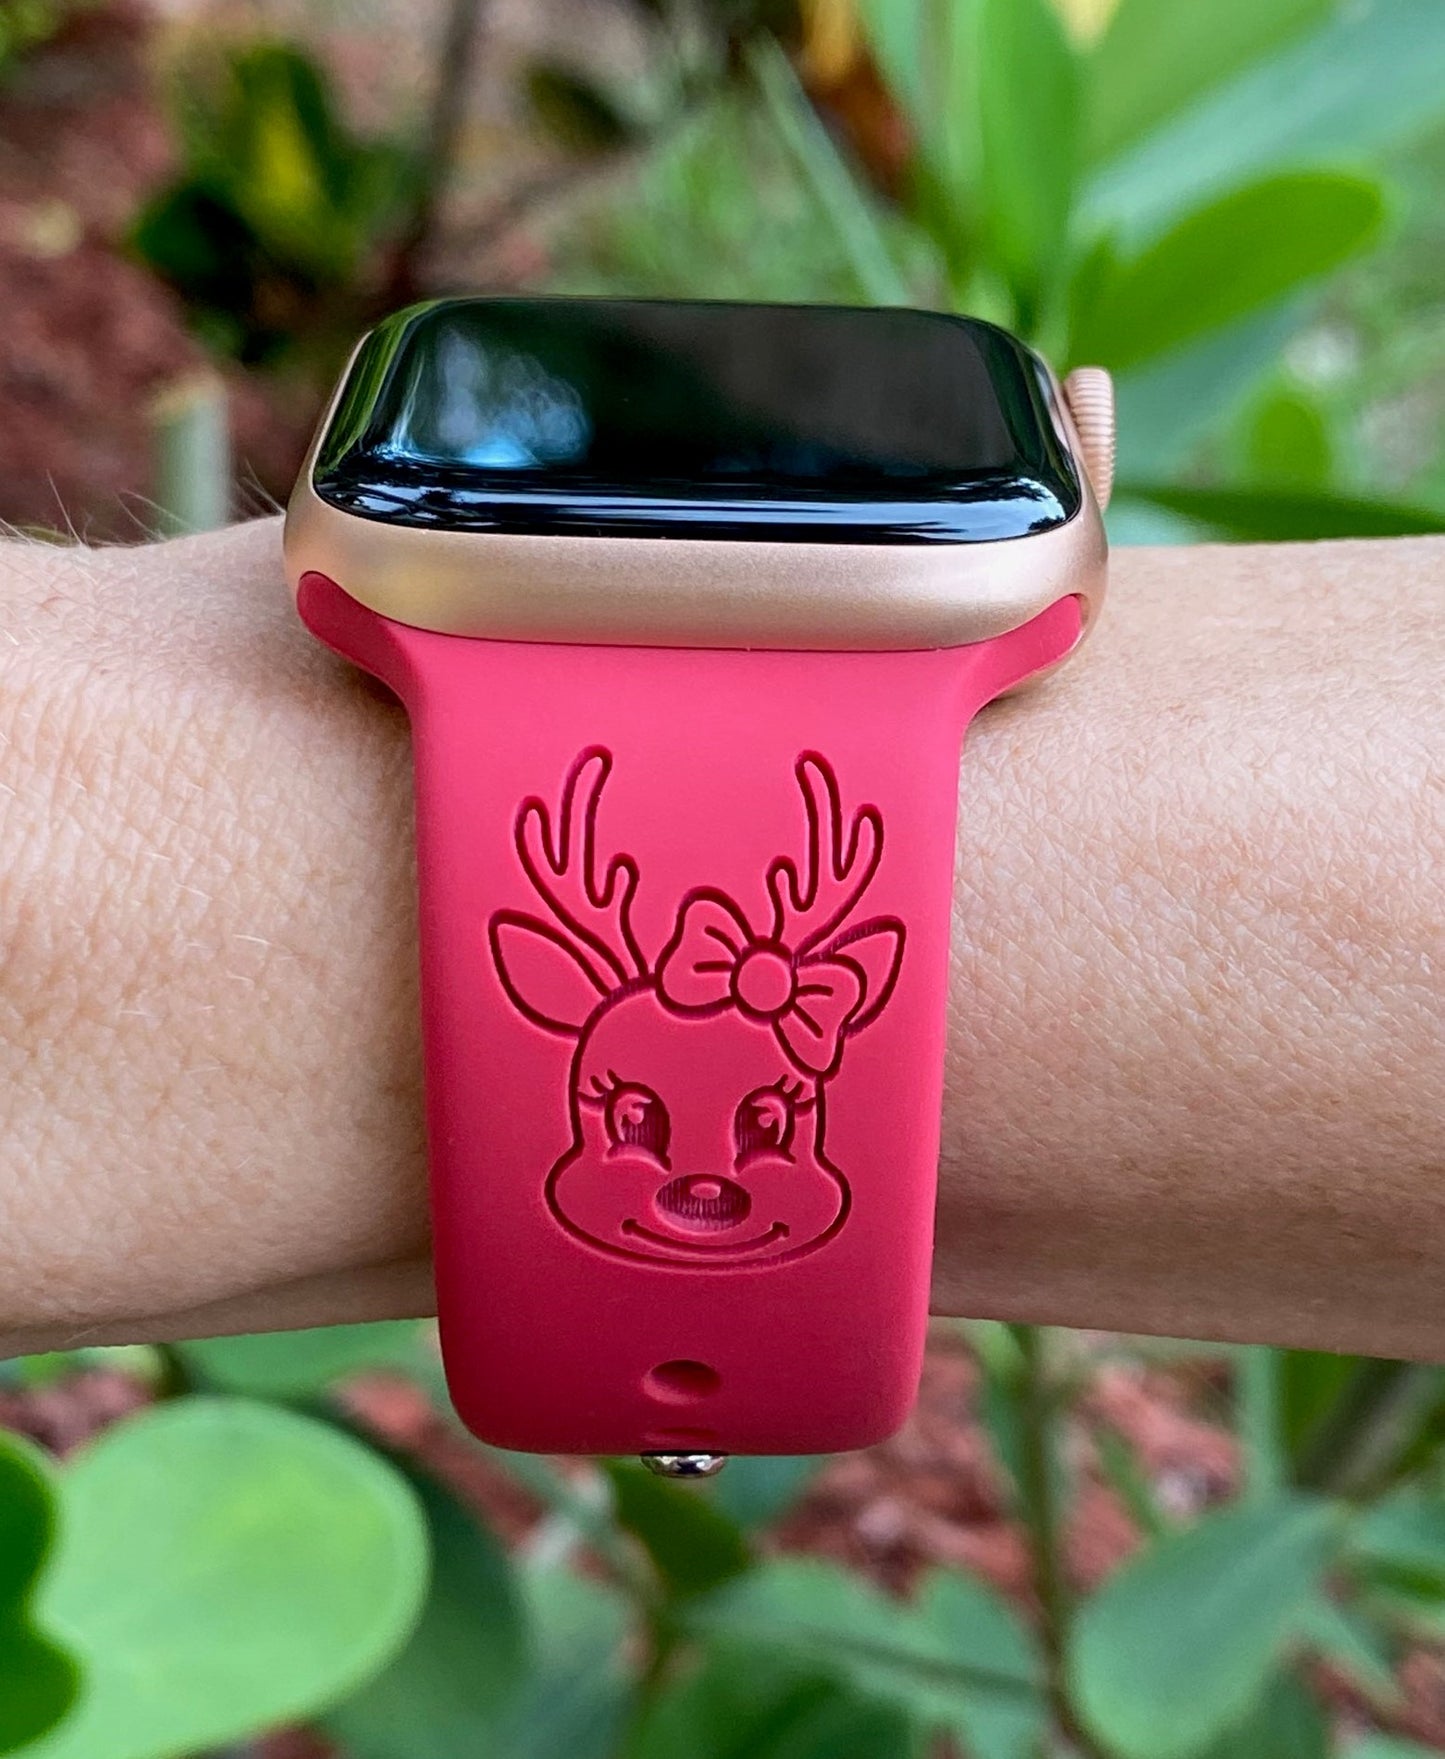 Cute Reindeer Apple Watch Band